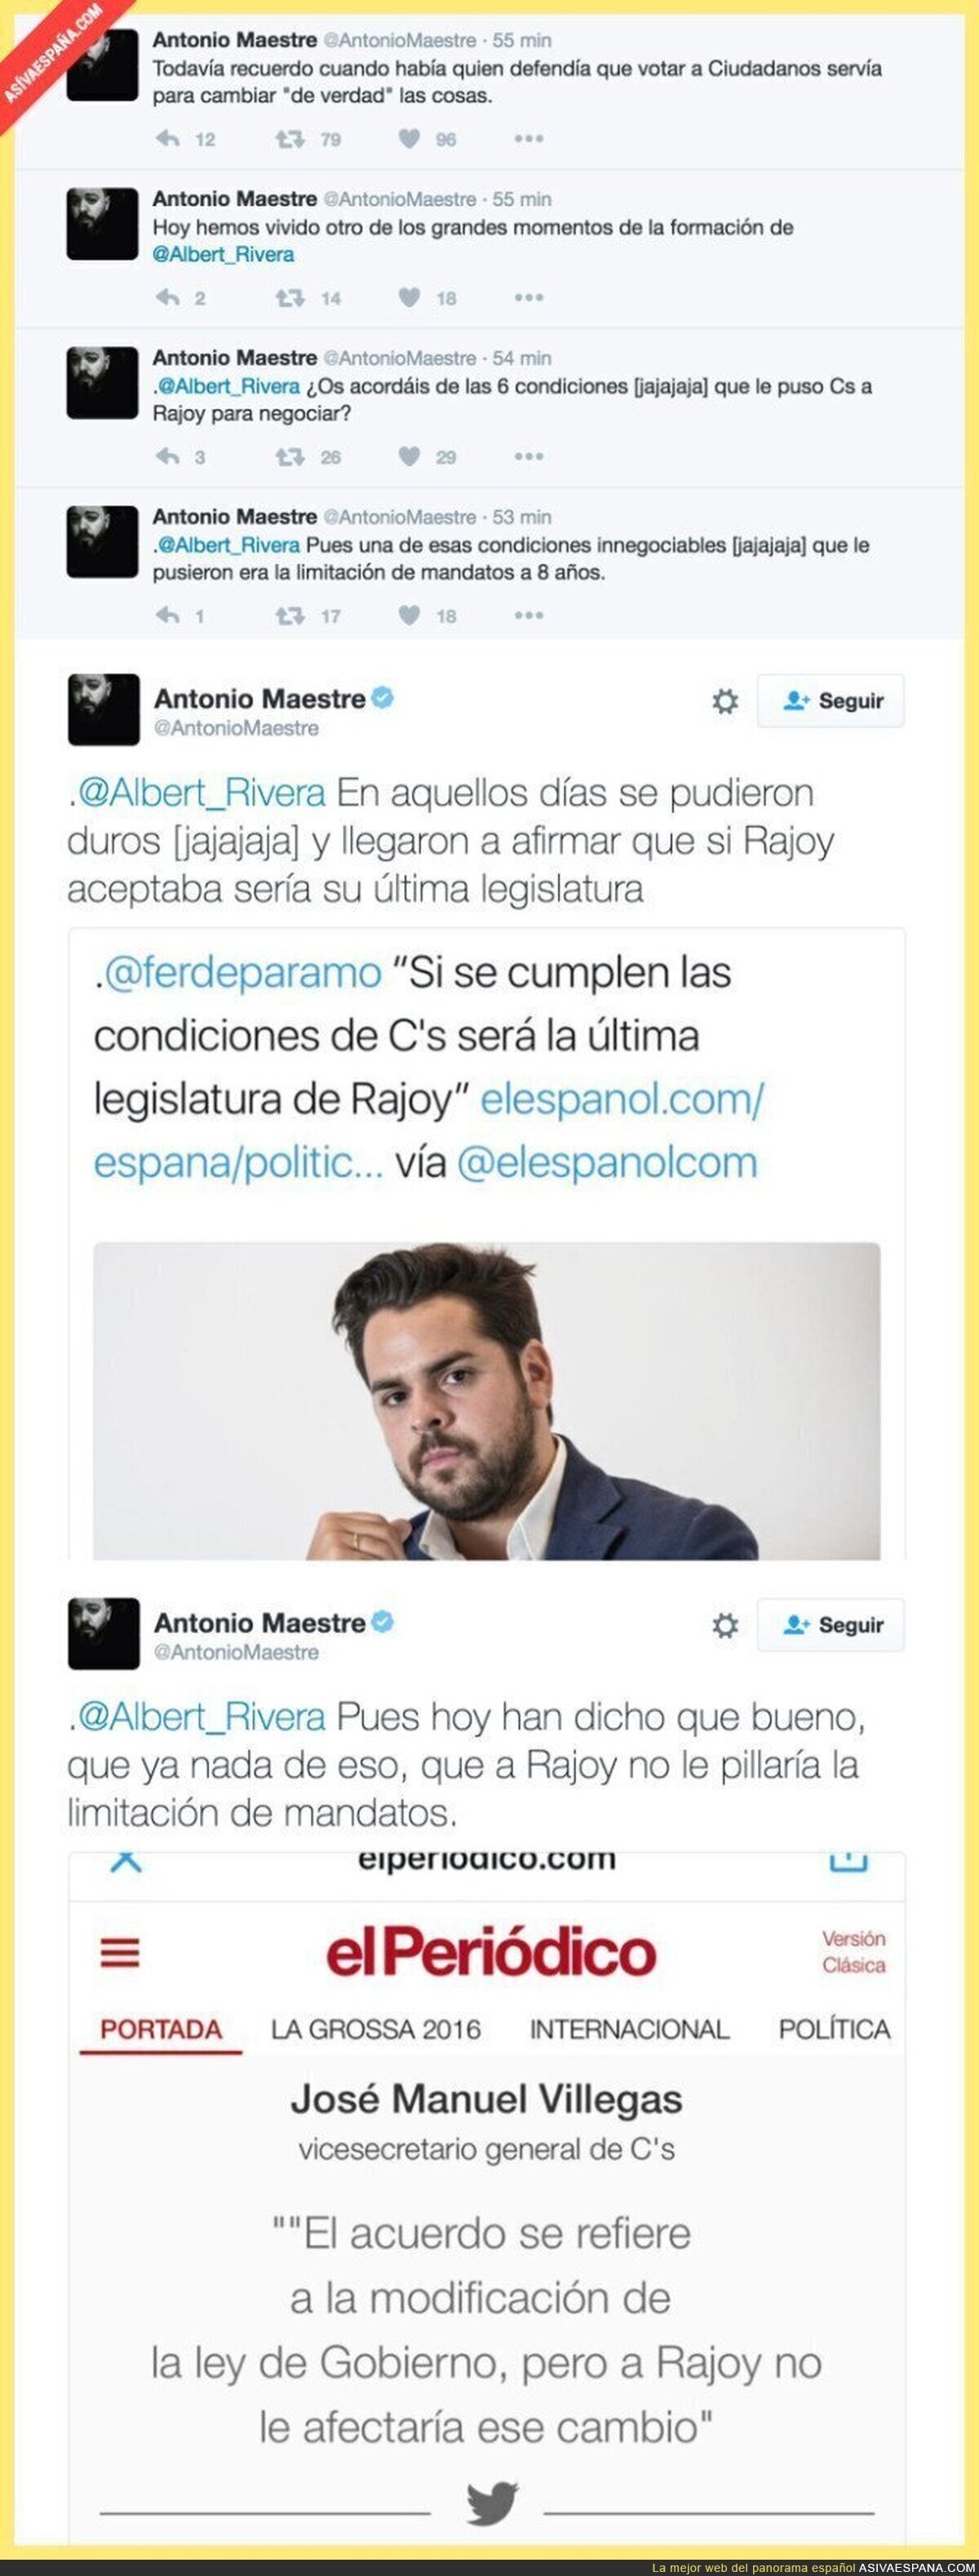 Ciudadanos se vuelve a contradecir, ahora con el mandato de Rajoy